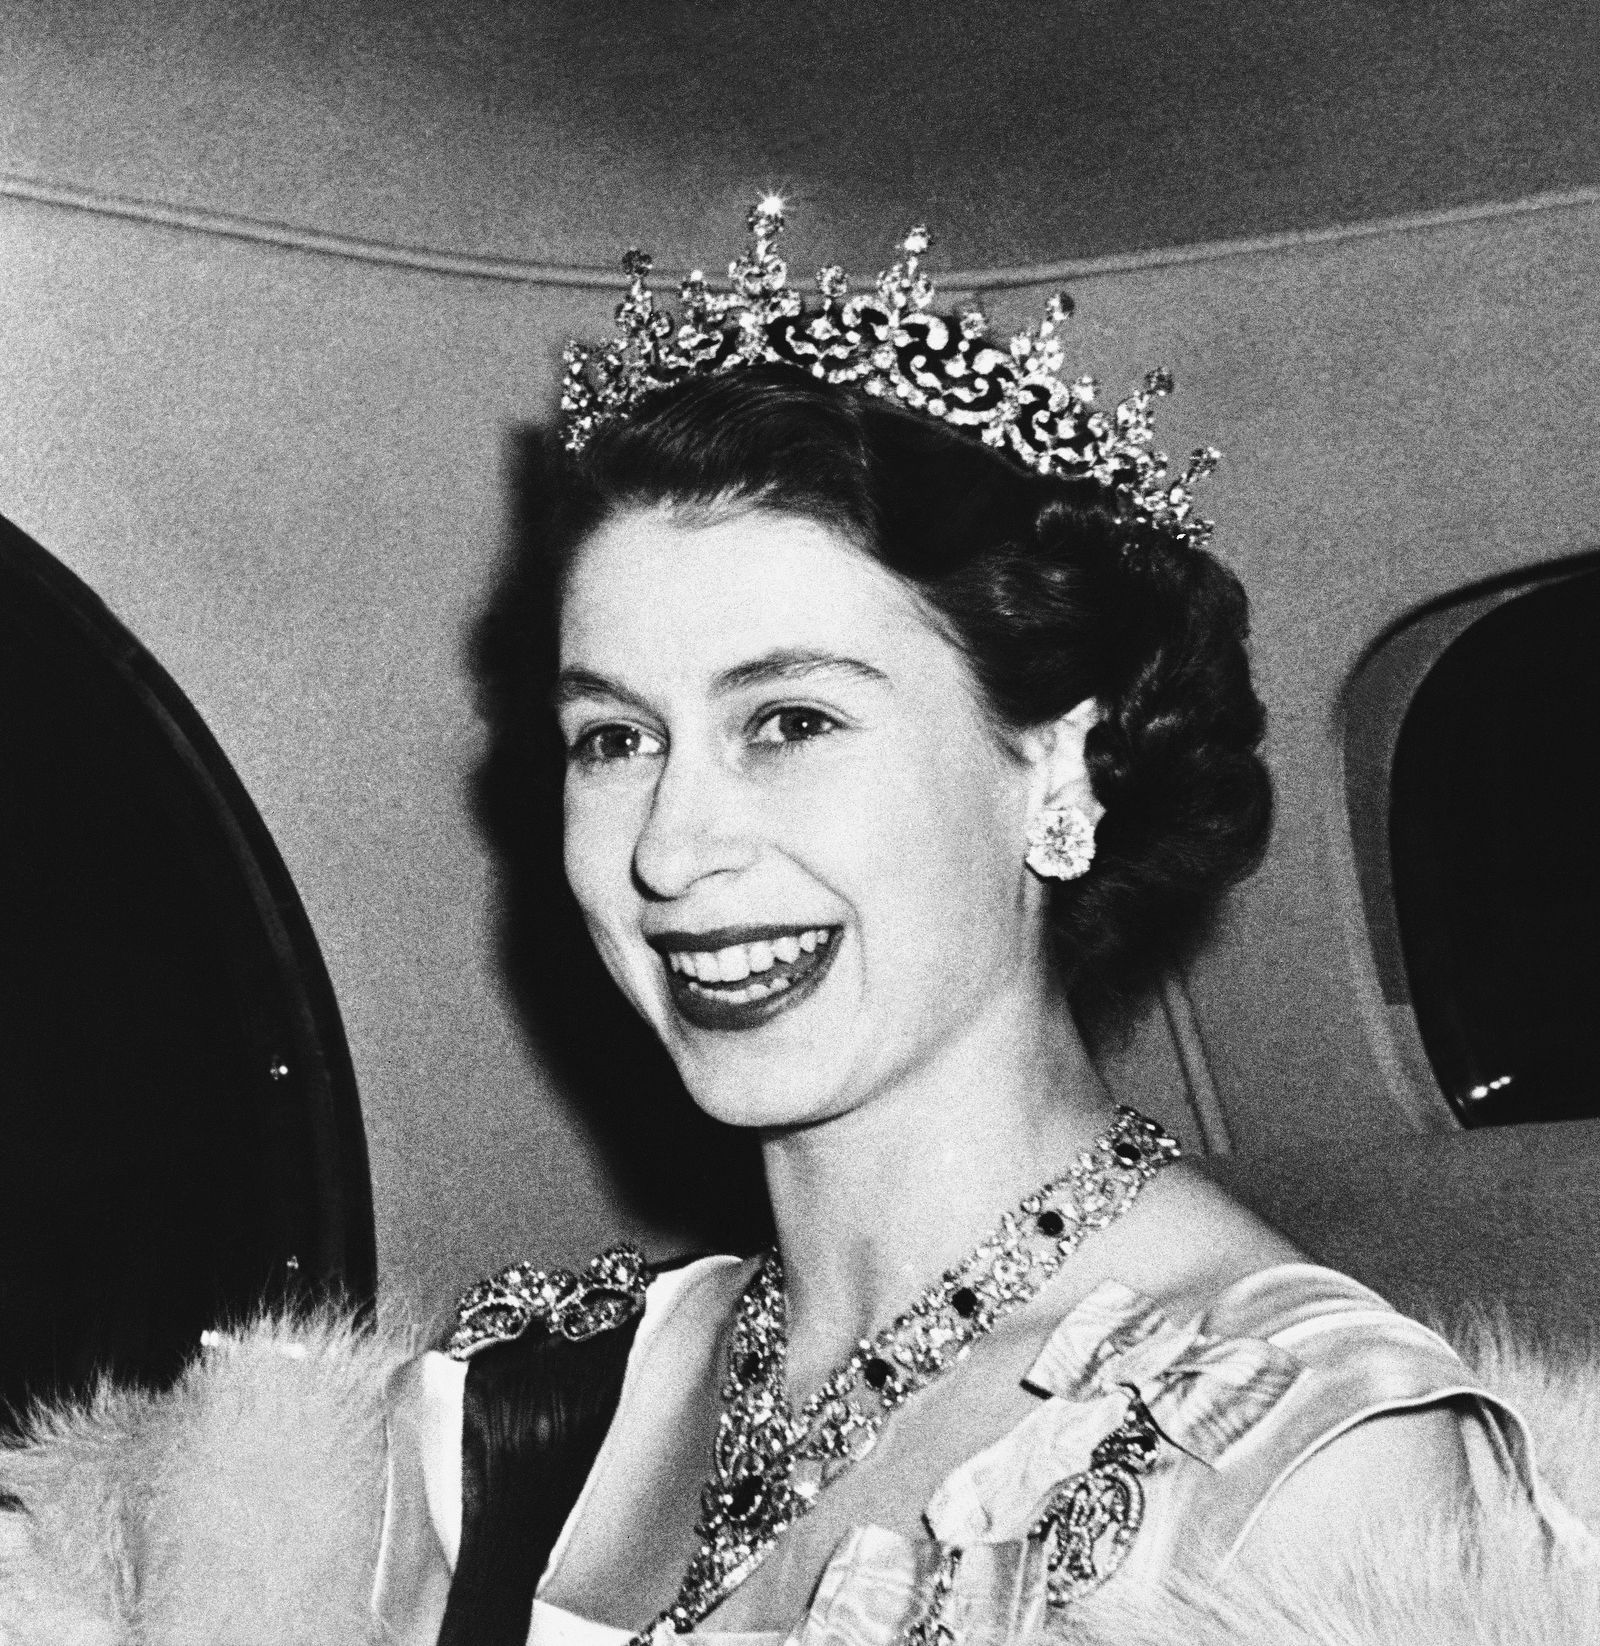 Công chúa Elizabeth đến dự một bữa tiệc cấp nhà nước ở London vào tháng 3/1950